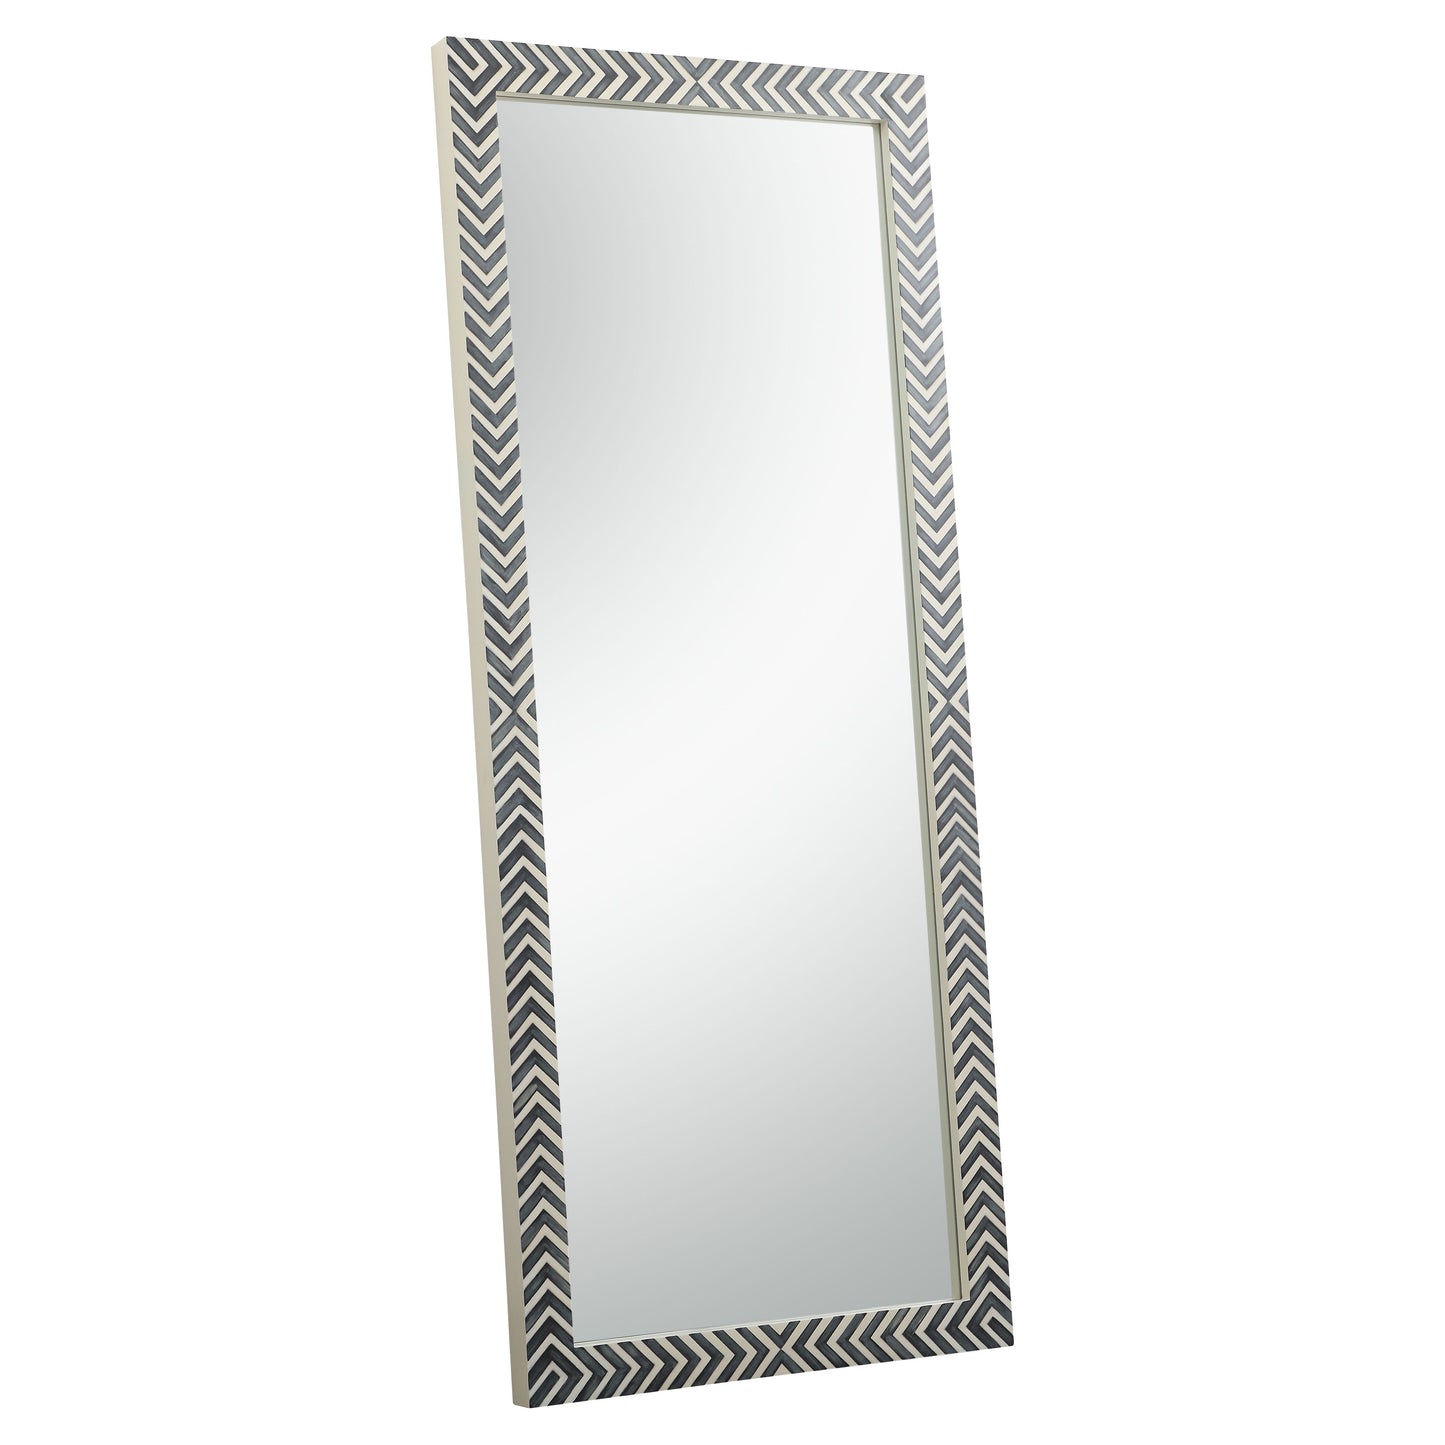 MR53072 Oullette 30" x 72" Rectangular Mirror in Chevron Frame